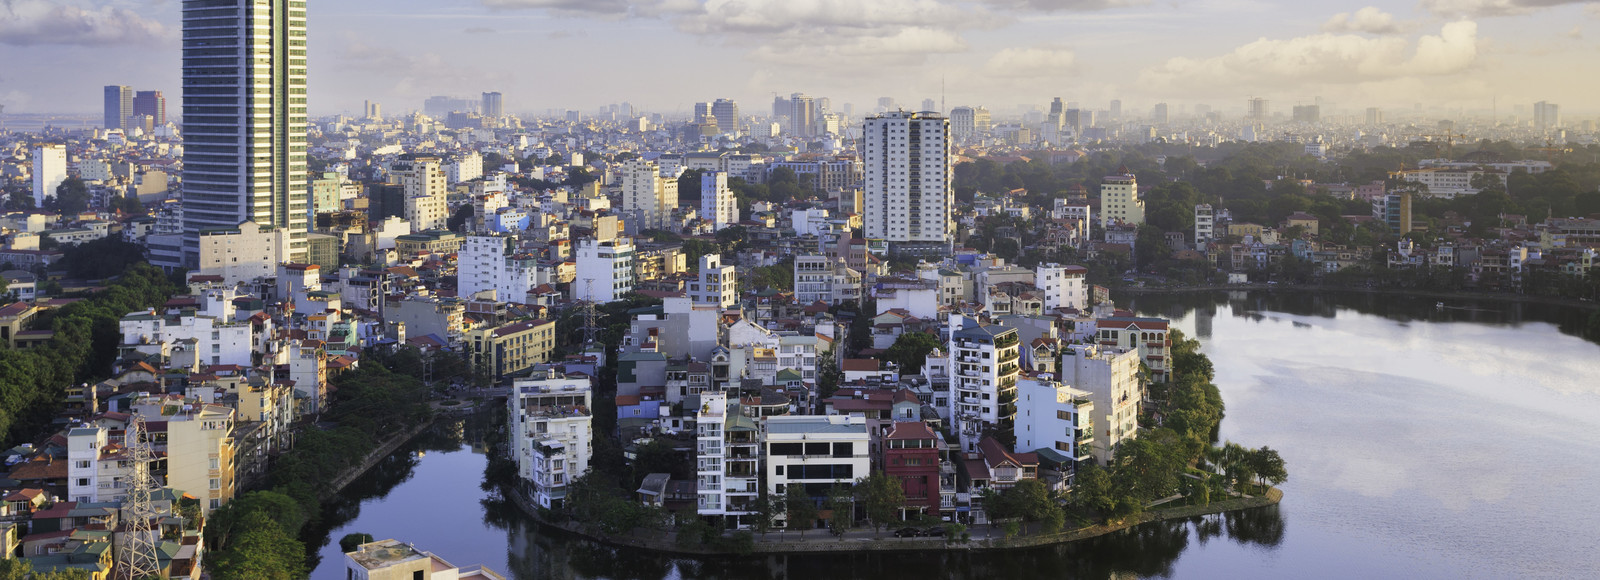 10 faszinierende Hanoi Sehenswürdigkeiten